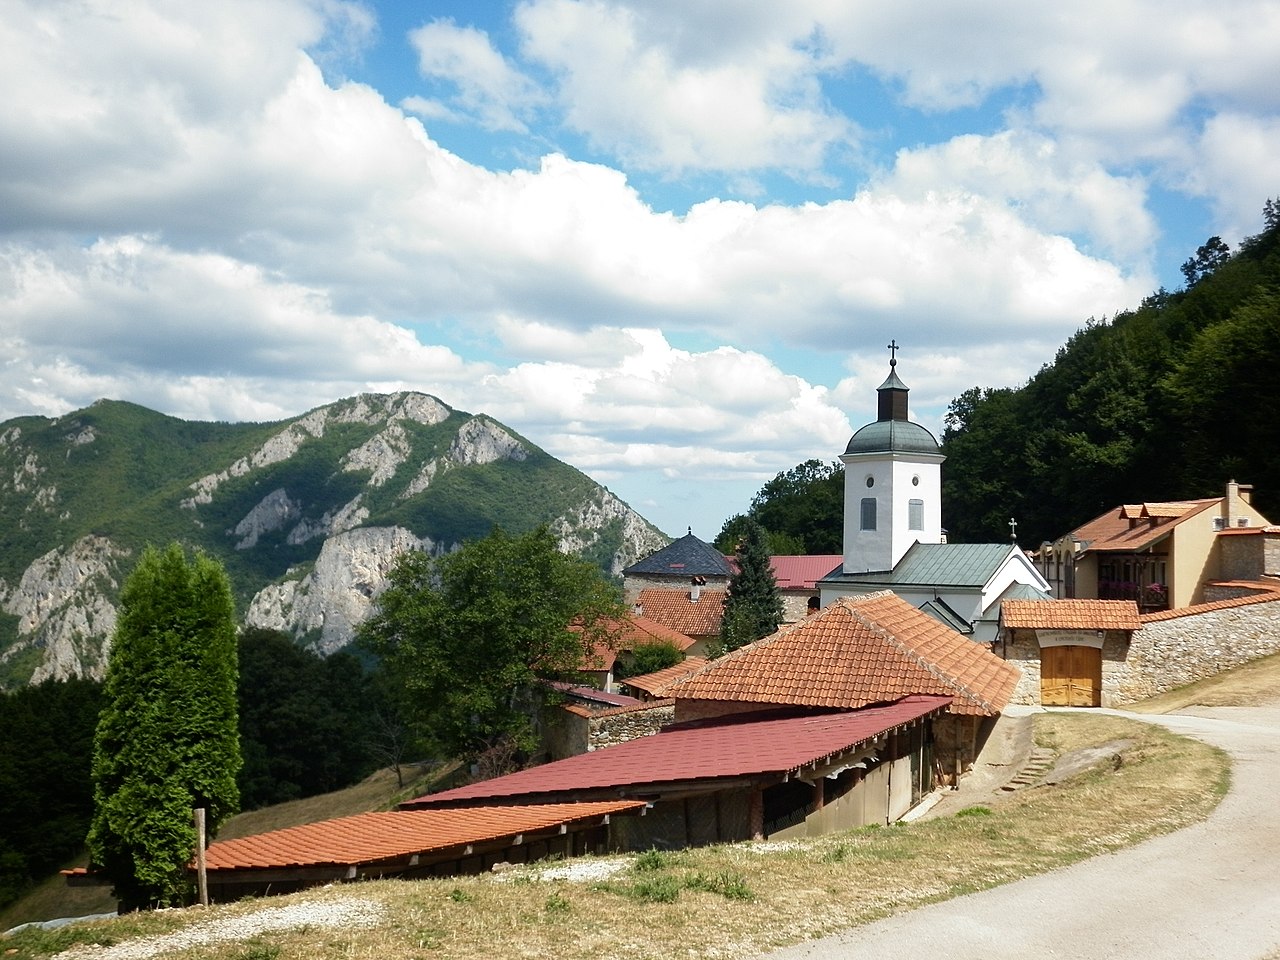 Blago Zapadne Srbije: Srpska Sveta gora usred najlepše klisure u zemlji (FOTO) 5